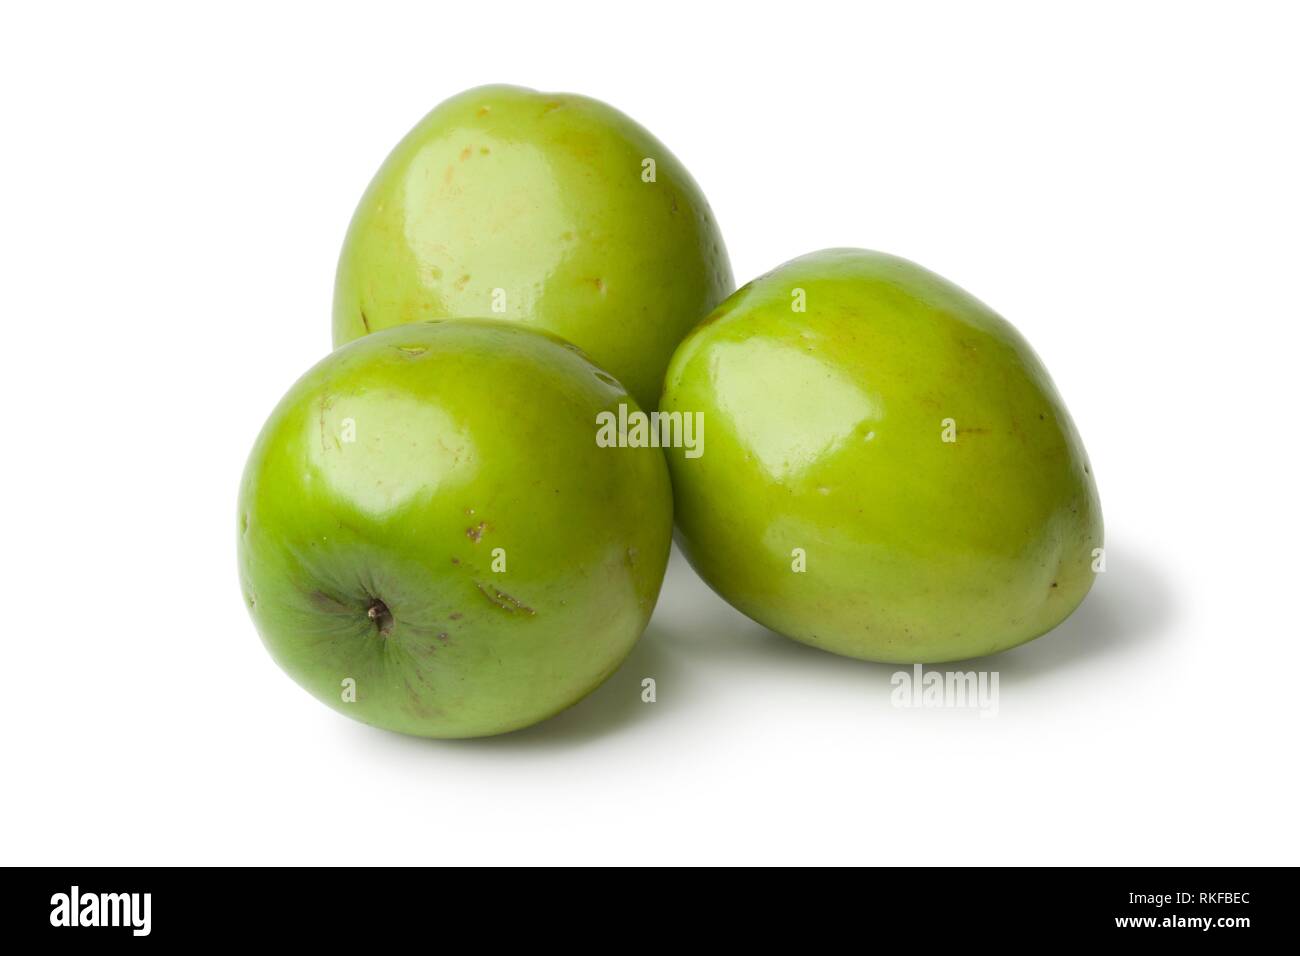 Fresh green whole Ambarella fruit on white background. Stock Photo